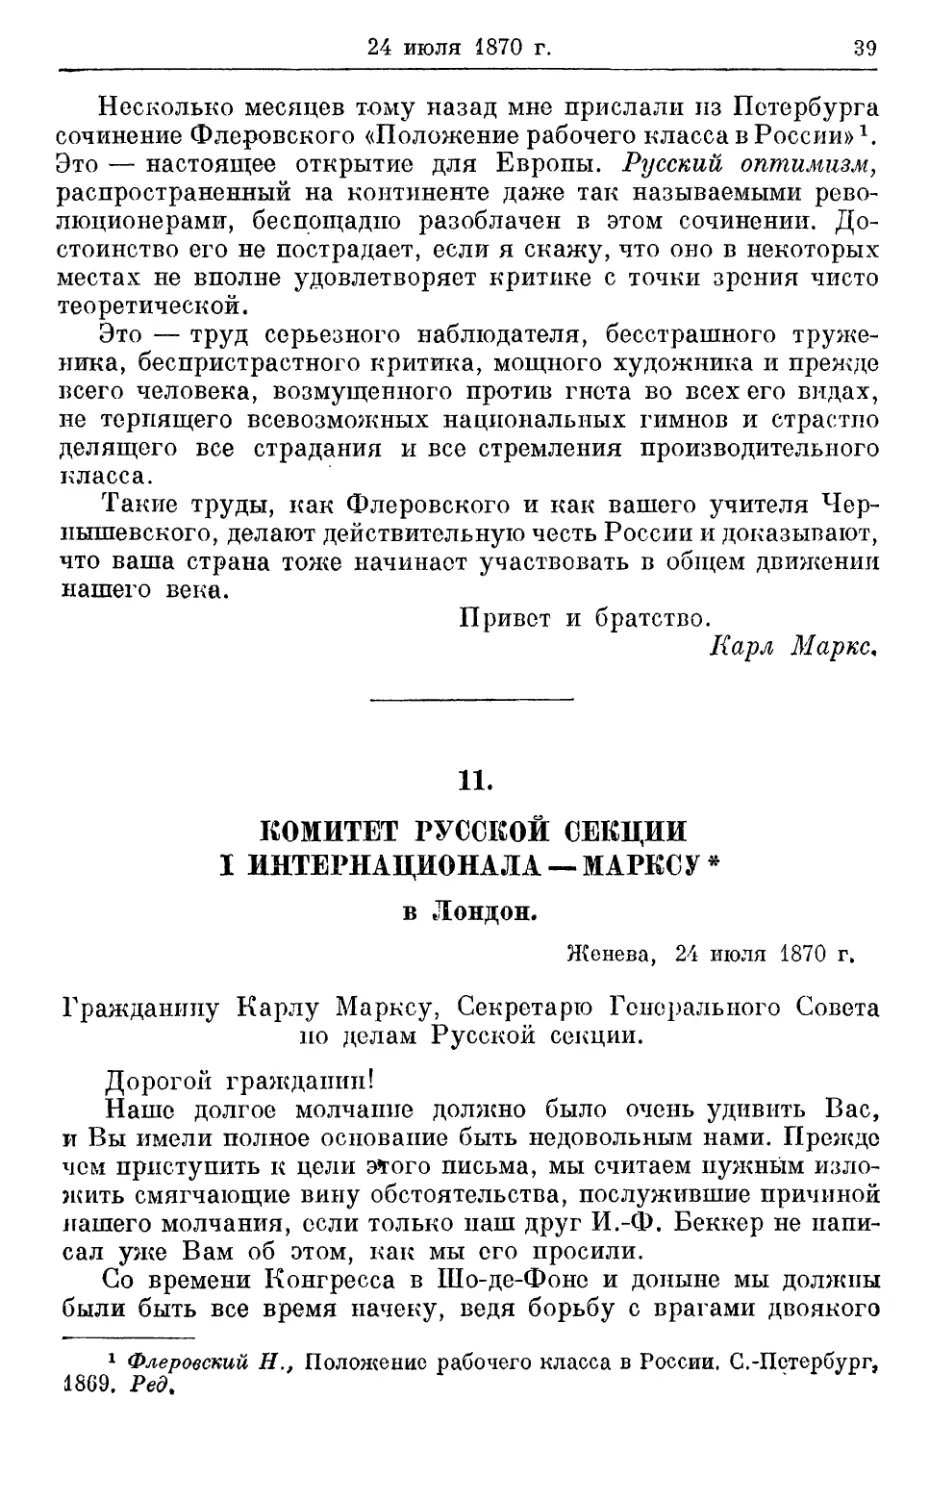 11. Комитет Русской секции I Интернационала — Марксу 24 июля 1870г